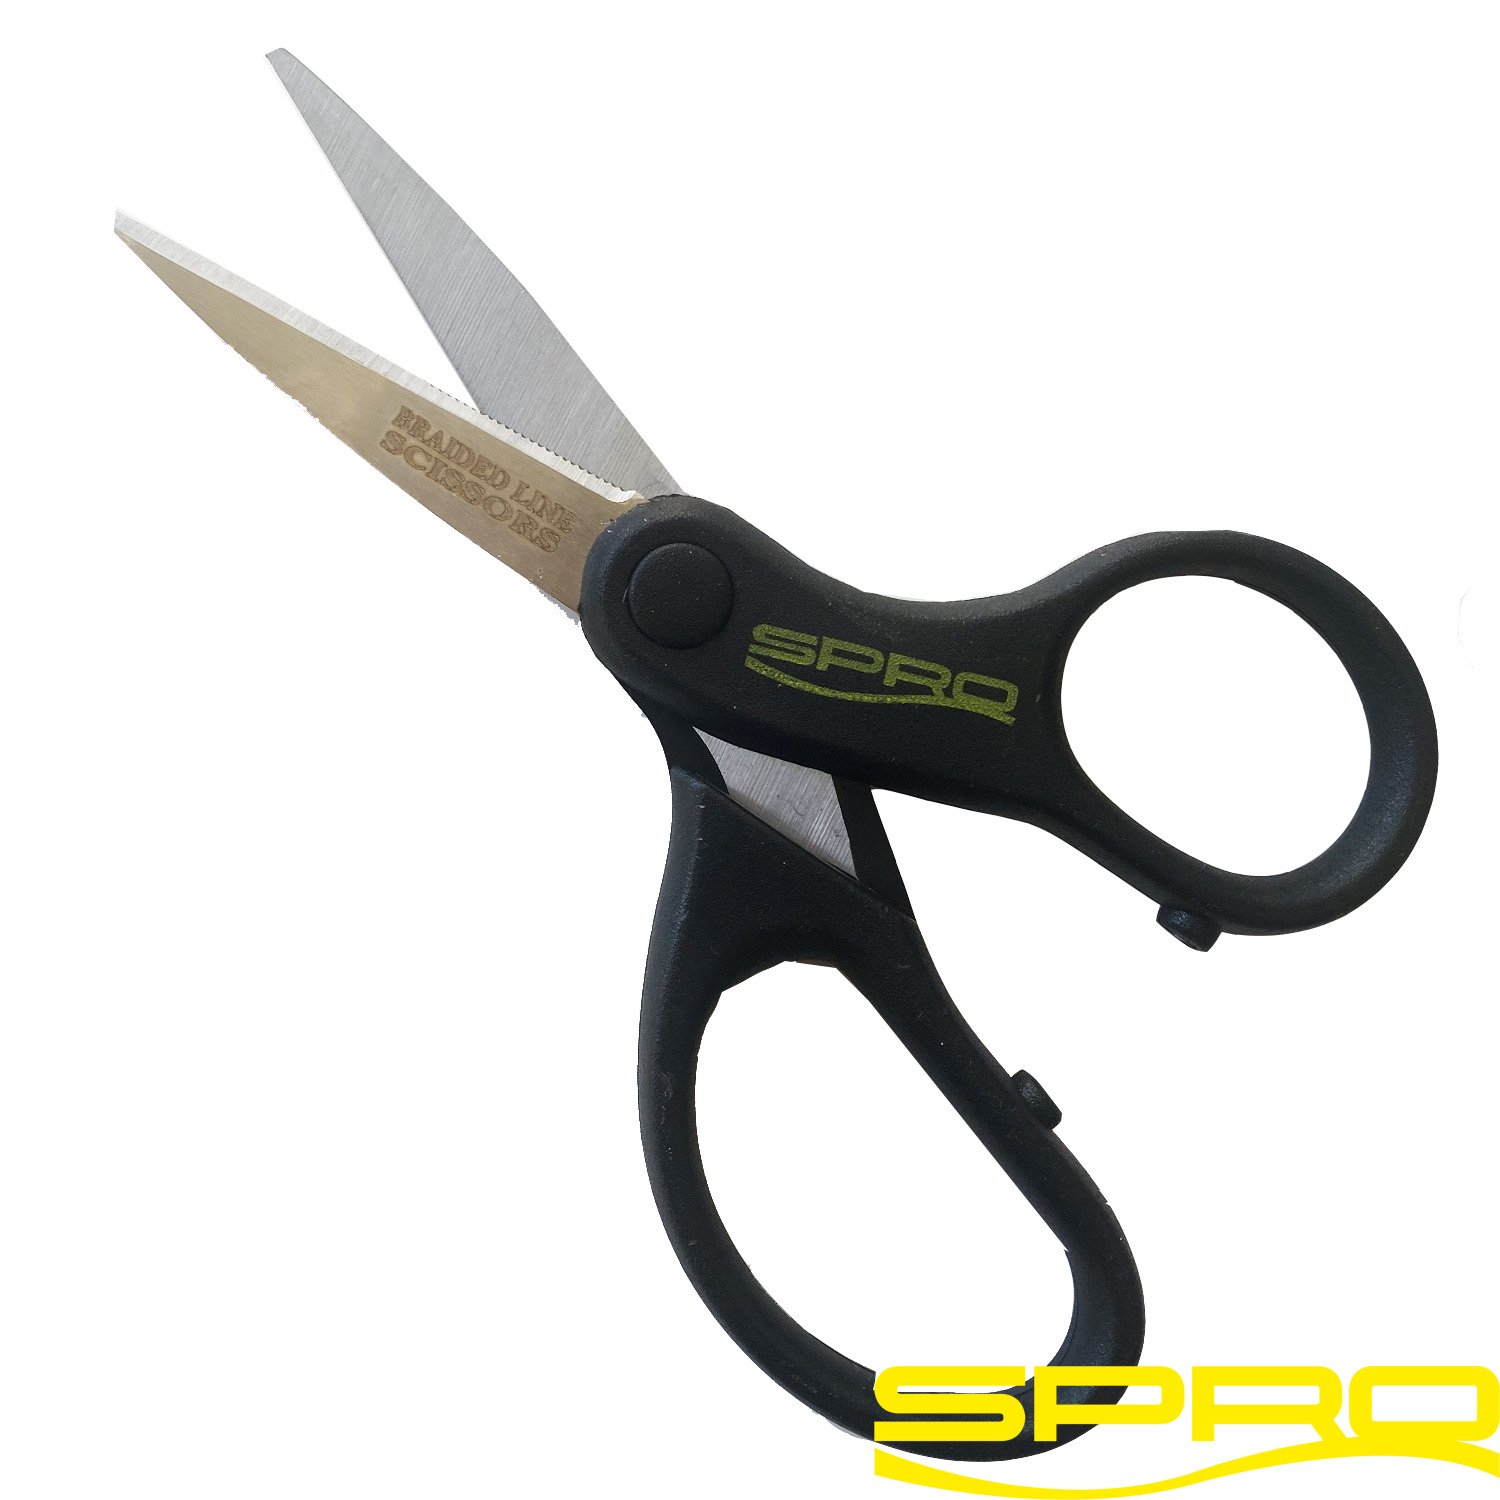 Ciseaux A Tresse Braided Lines Scissors 13,5cm Spro